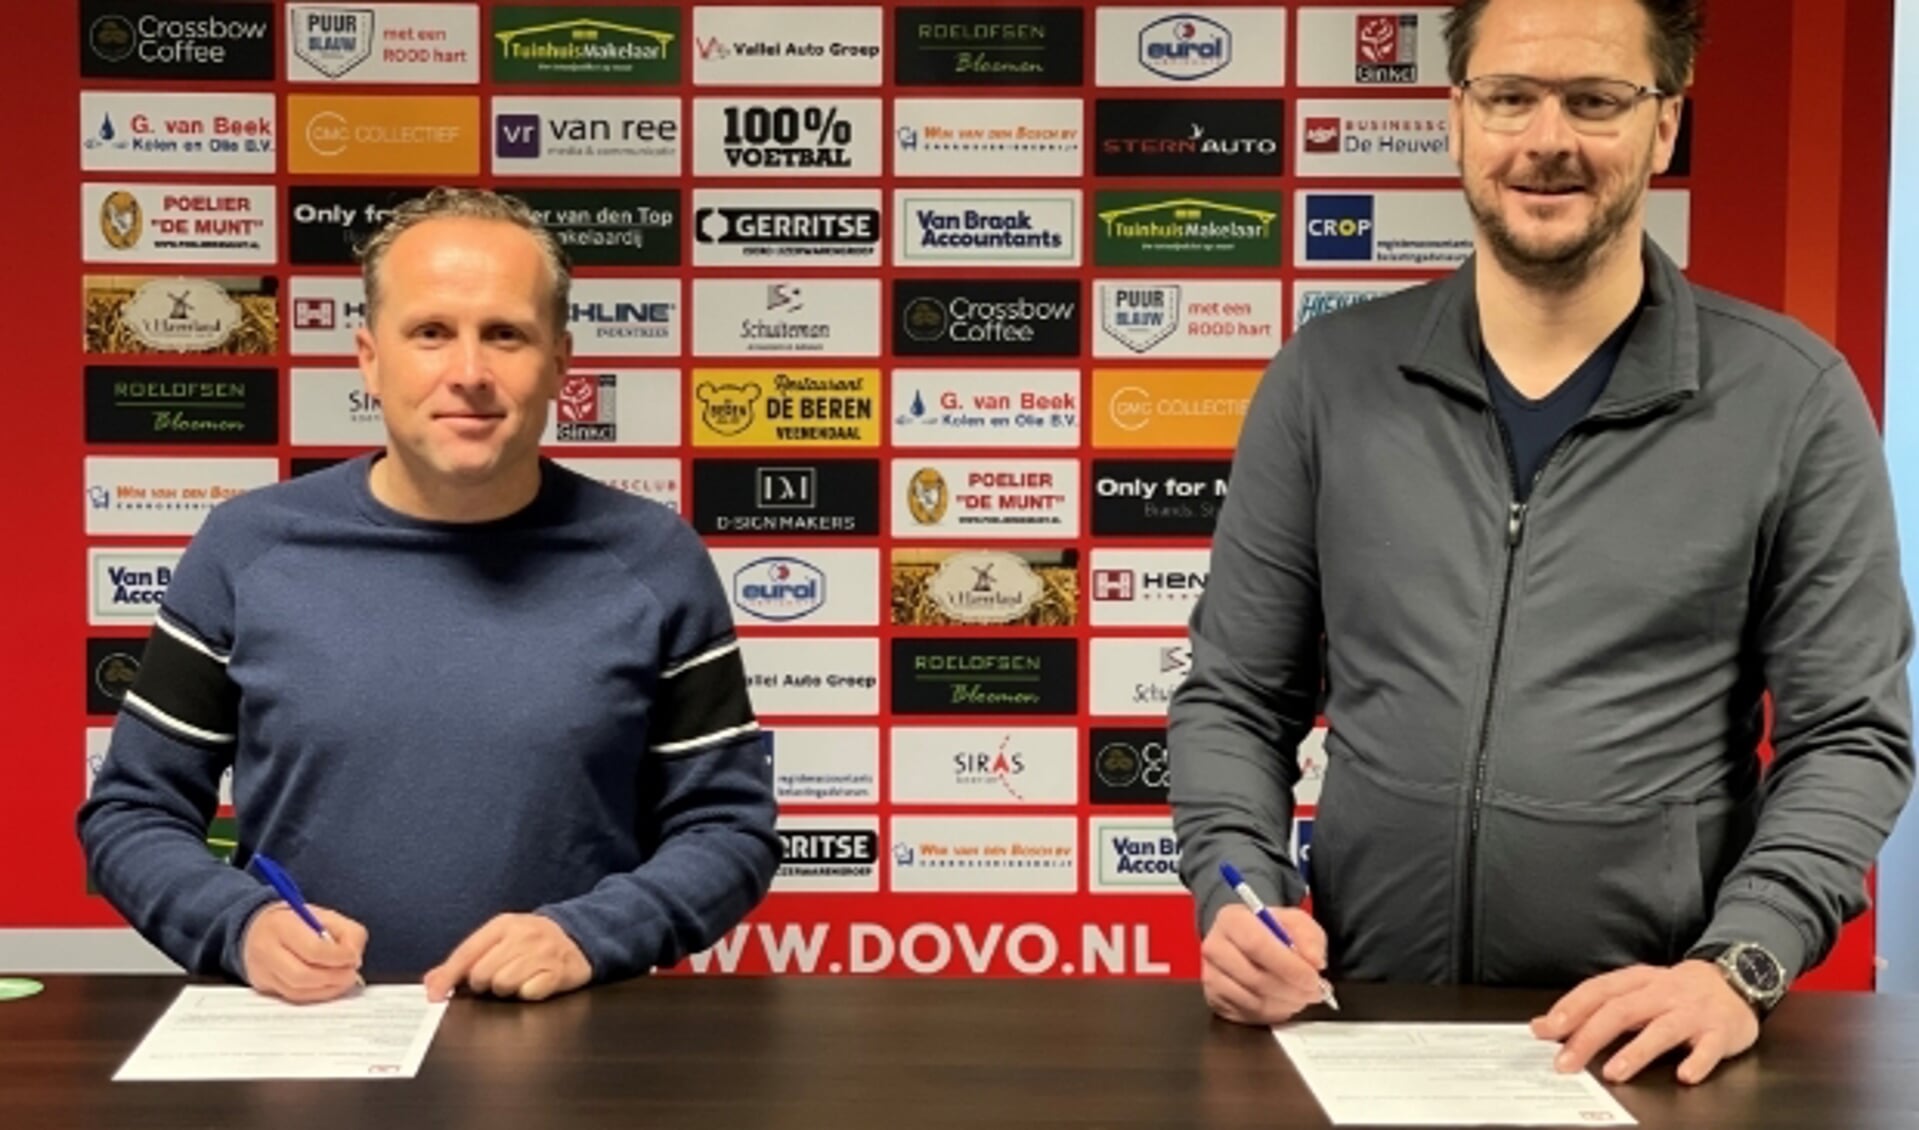 Ondertekening sponsorcontract VB Investments BV met Harm van Braak (rechts) en Dico Harteman namens DOVO (links)